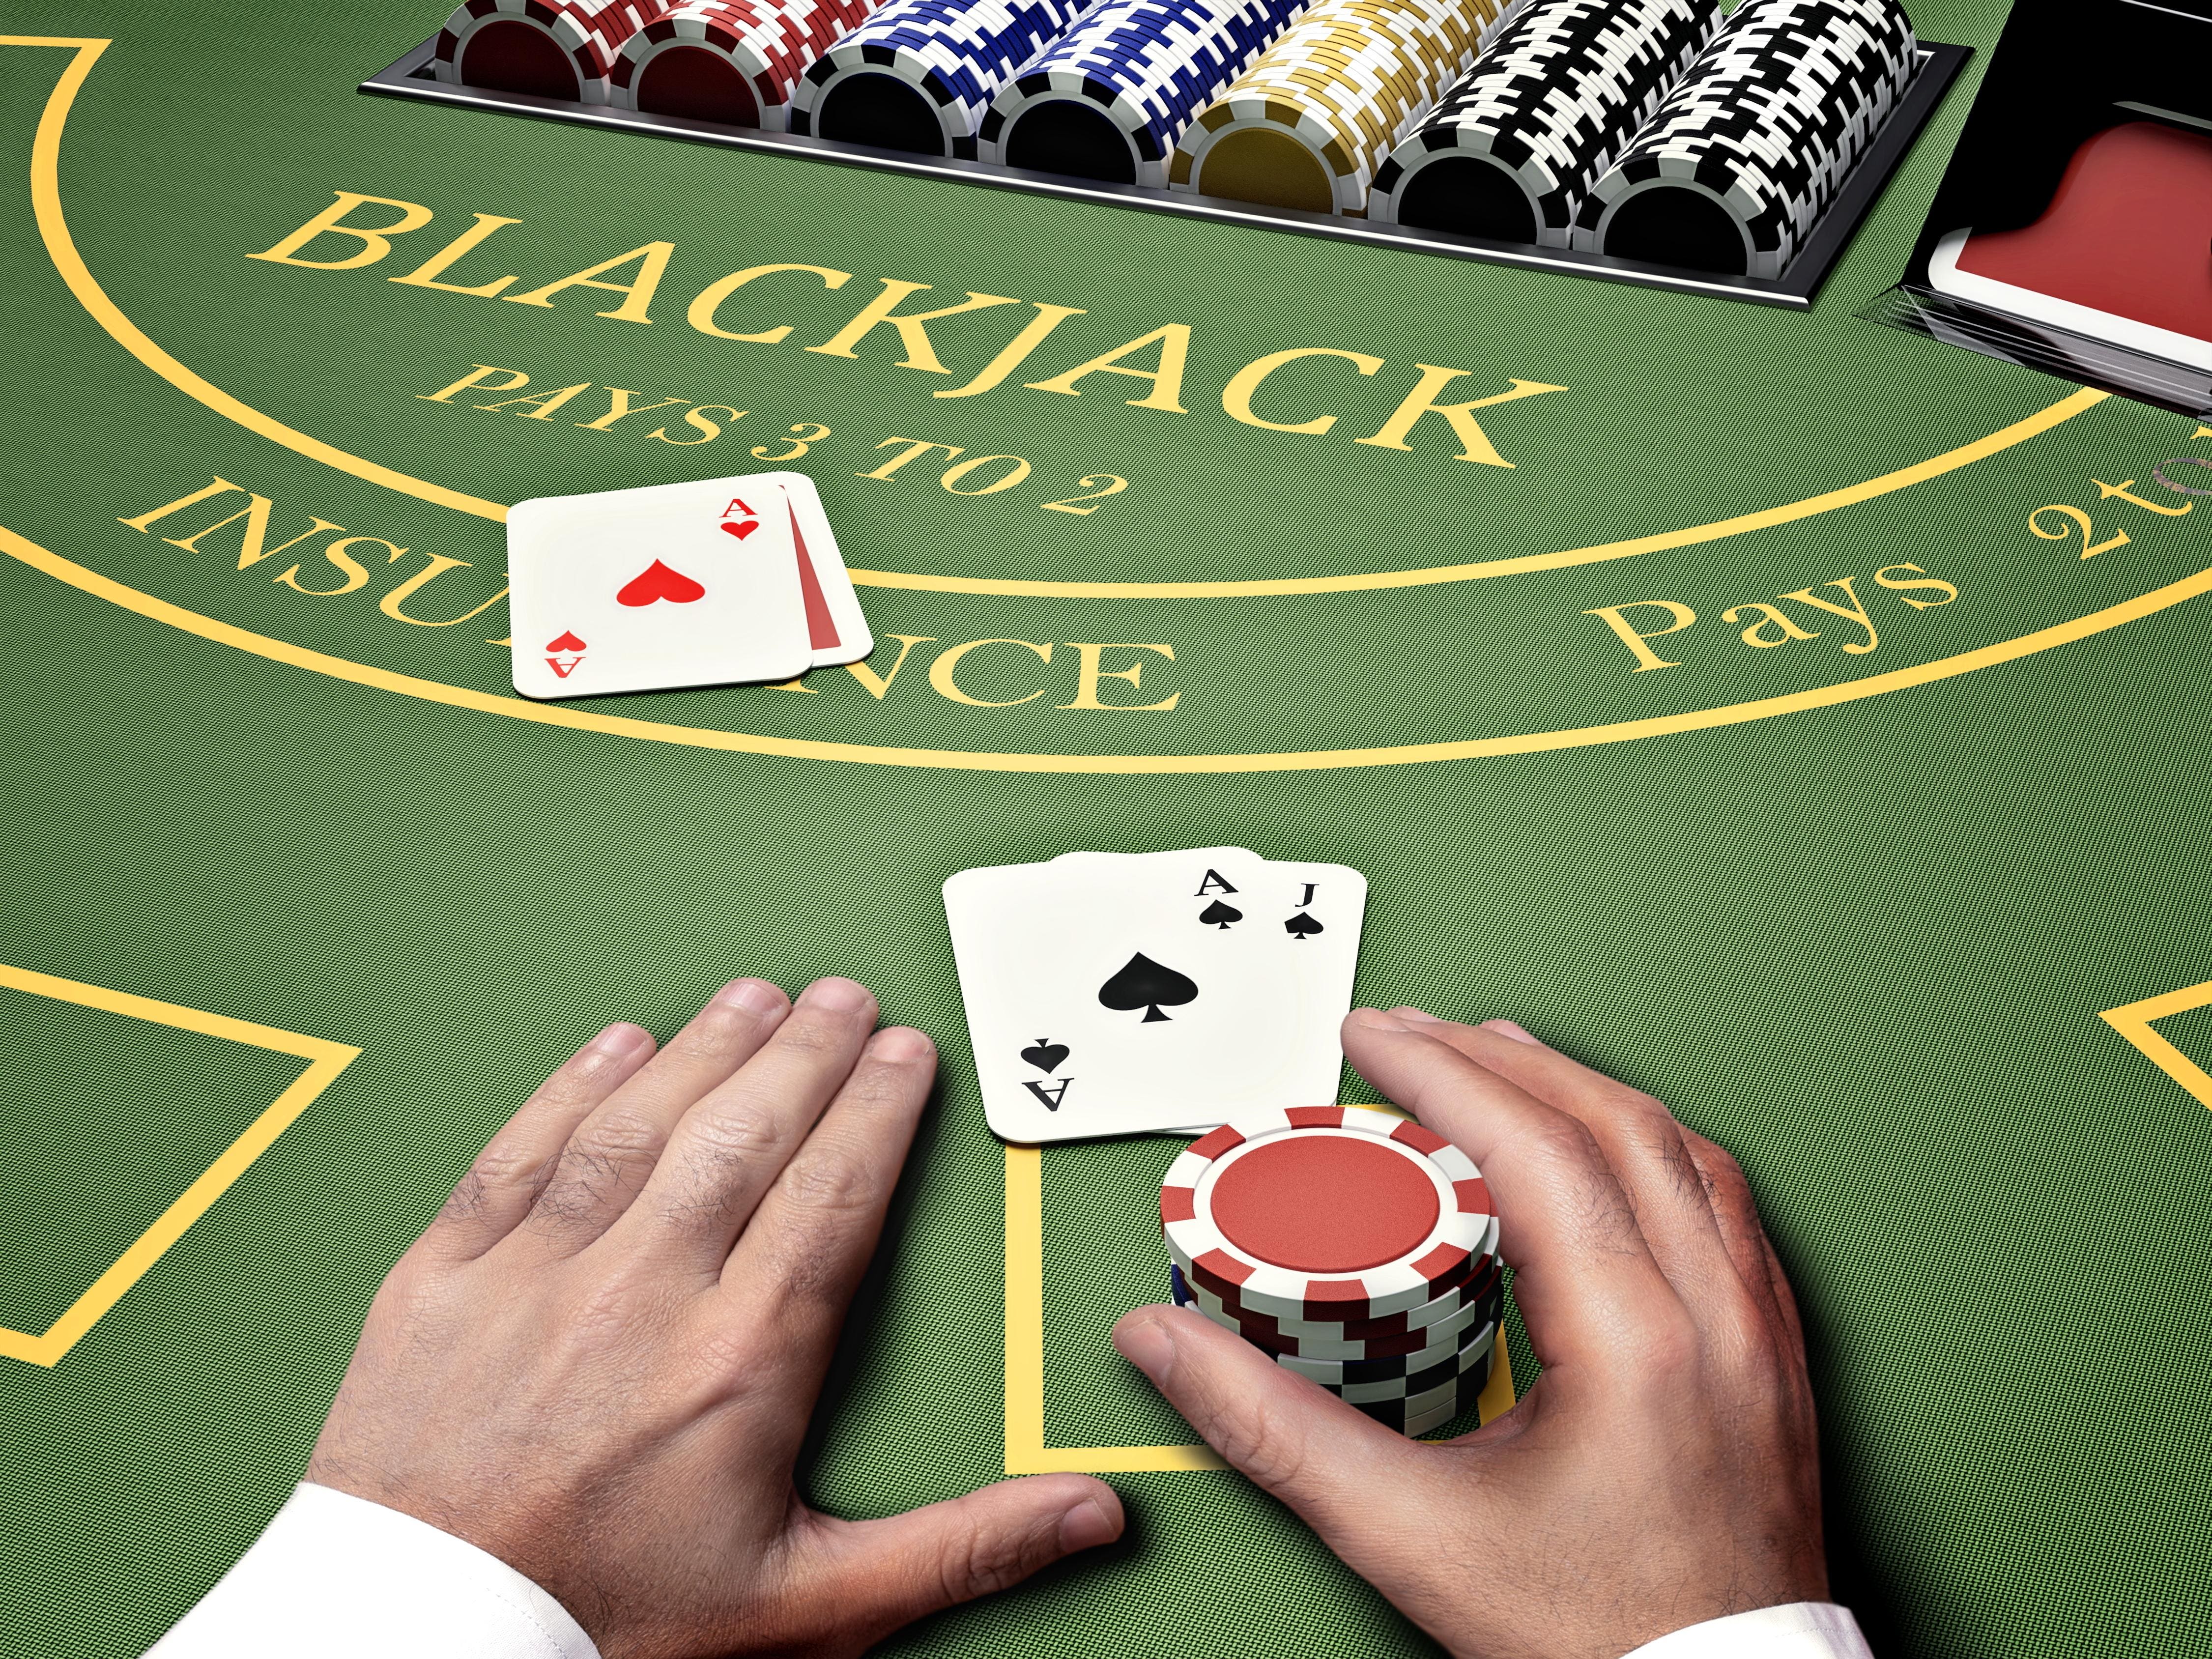 Phỏng vấn một tay chơi Blackjack chuyên nghiệp: 'Tôi vẫn thắng khi chơi ván 21 ở Las Vegas'